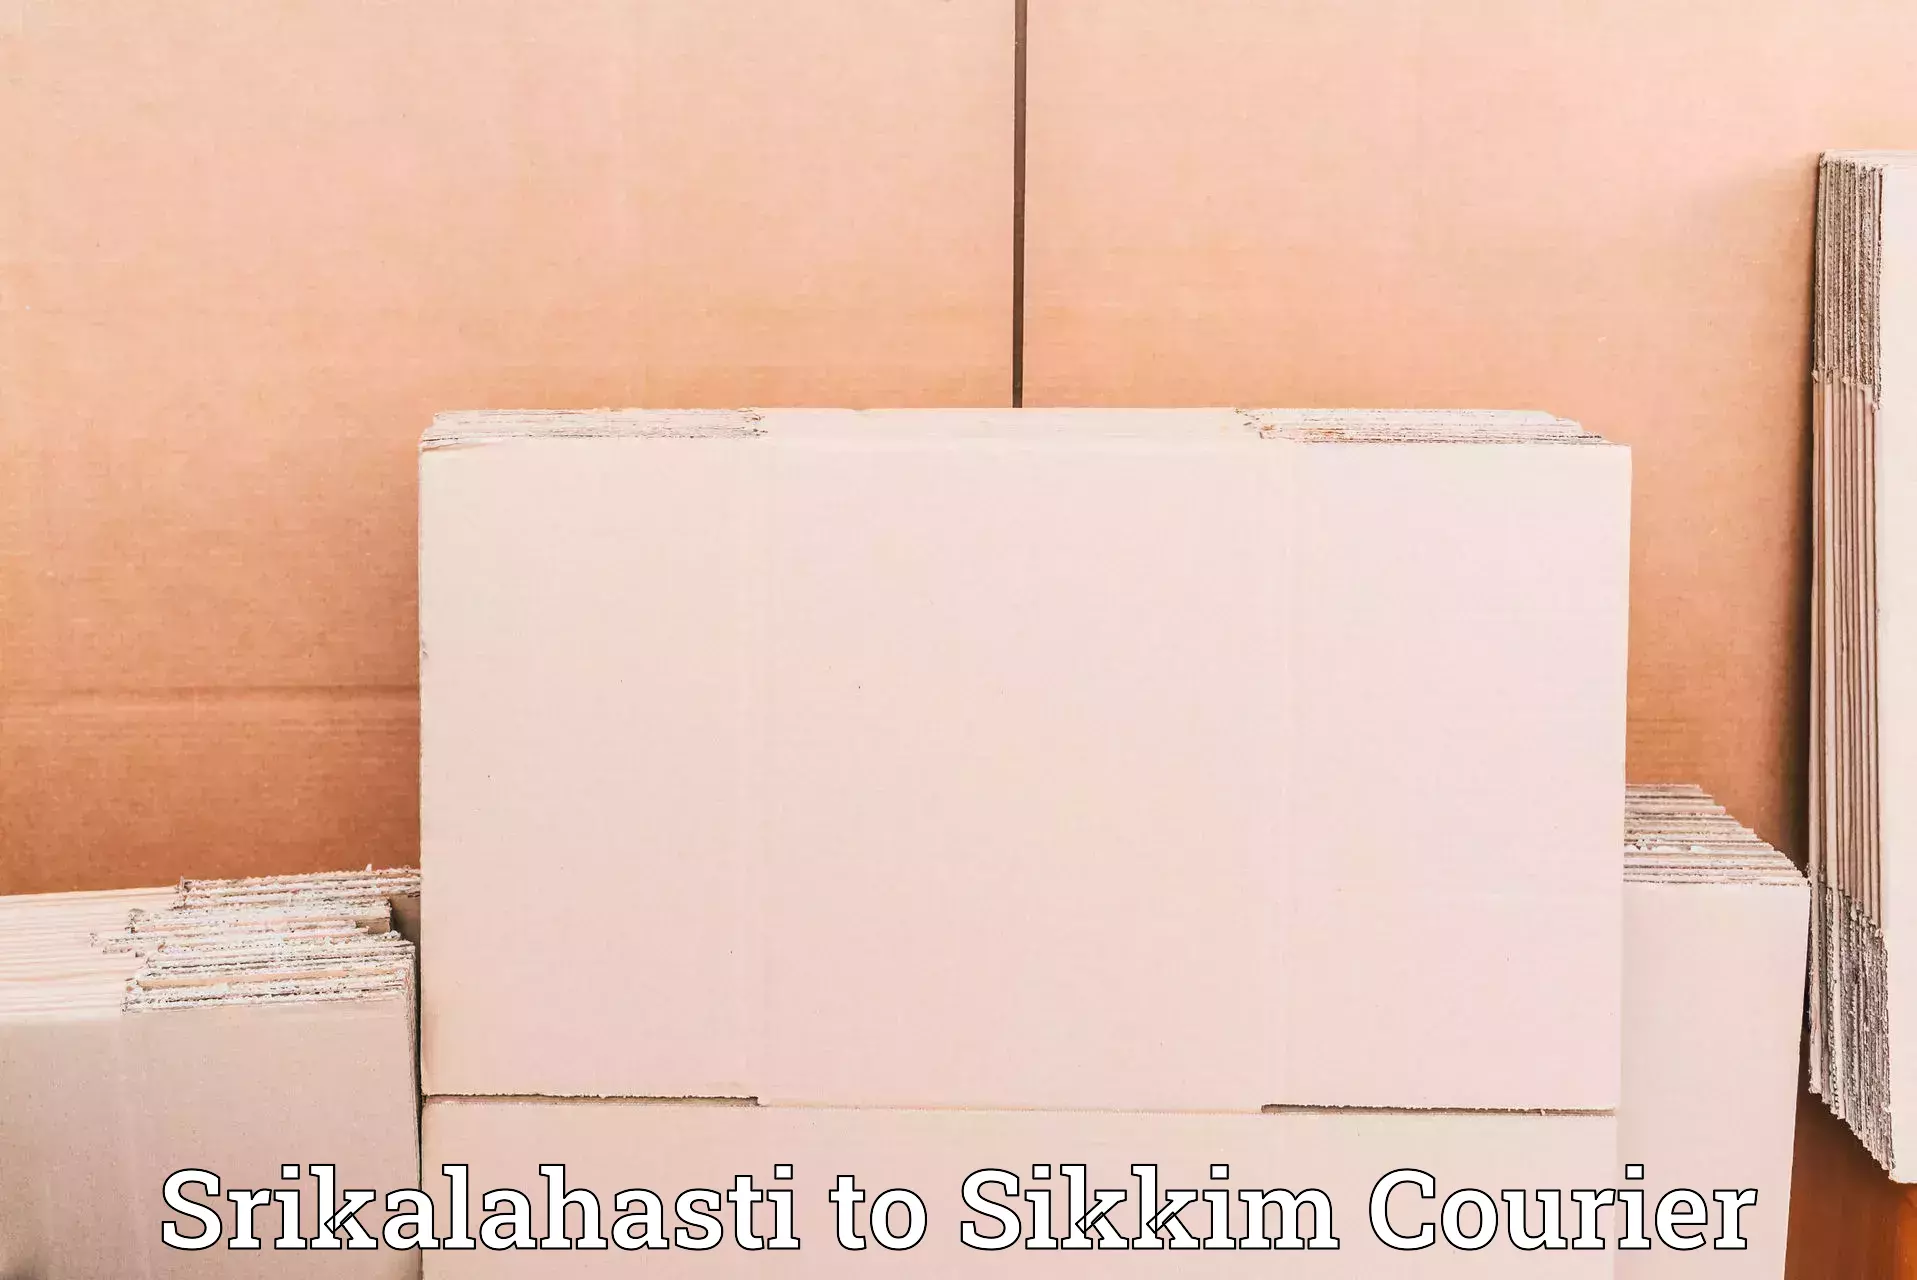 Large-scale shipping solutions Srikalahasti to Namchi